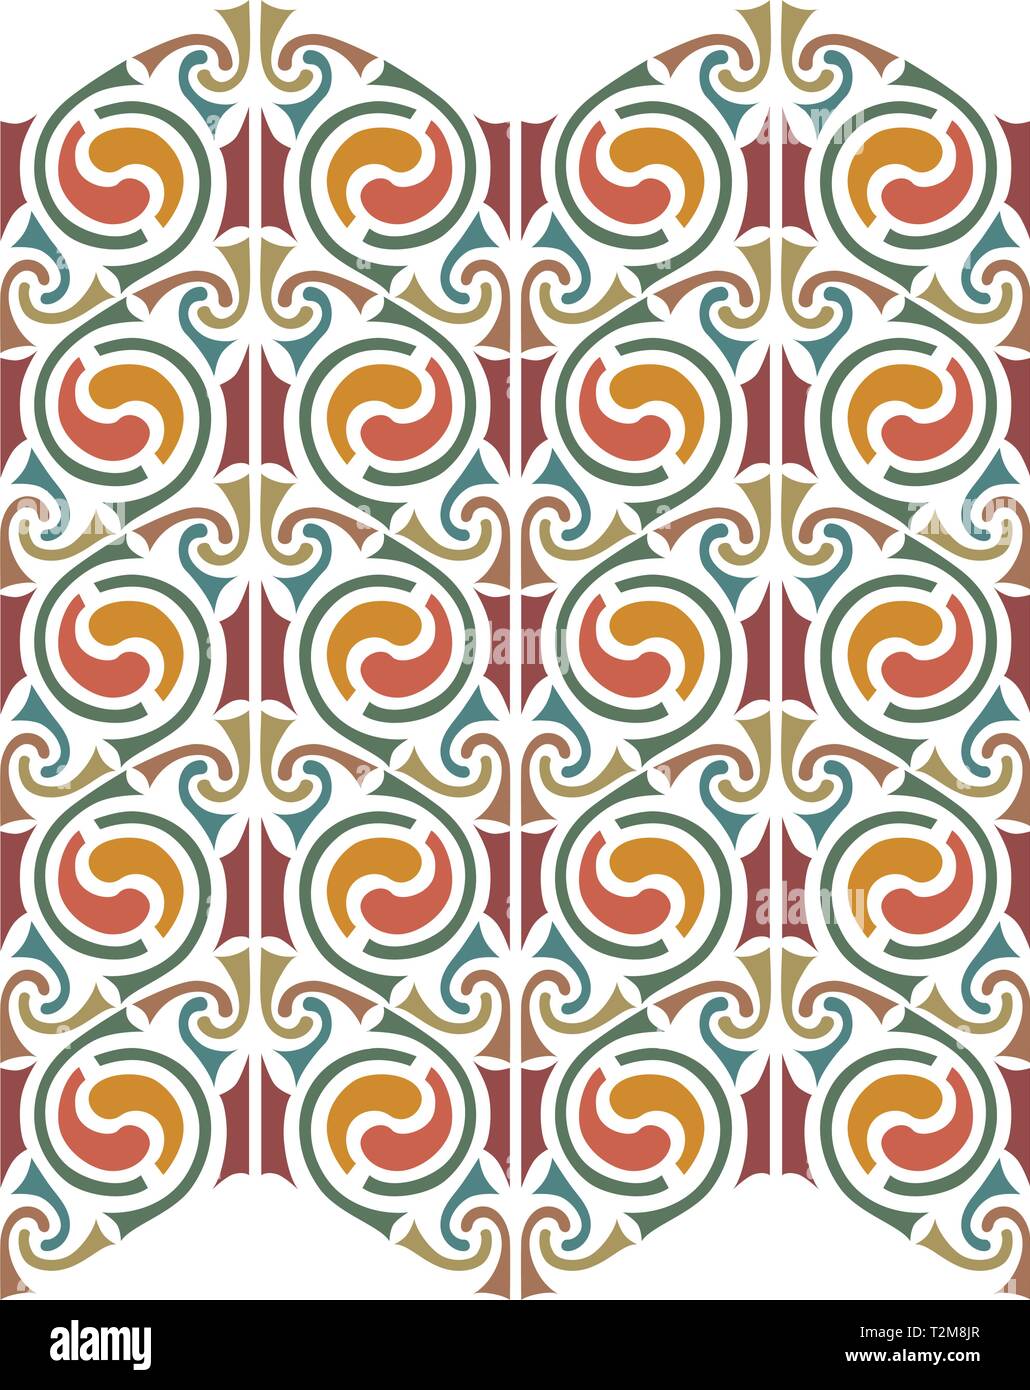 Knoten keltische Muster, isolierten Skizze Symbole Design für die Verwendung in Vorlagen und Muster für Tattoo und verschiedene Designs - Vektor Stock Vektor